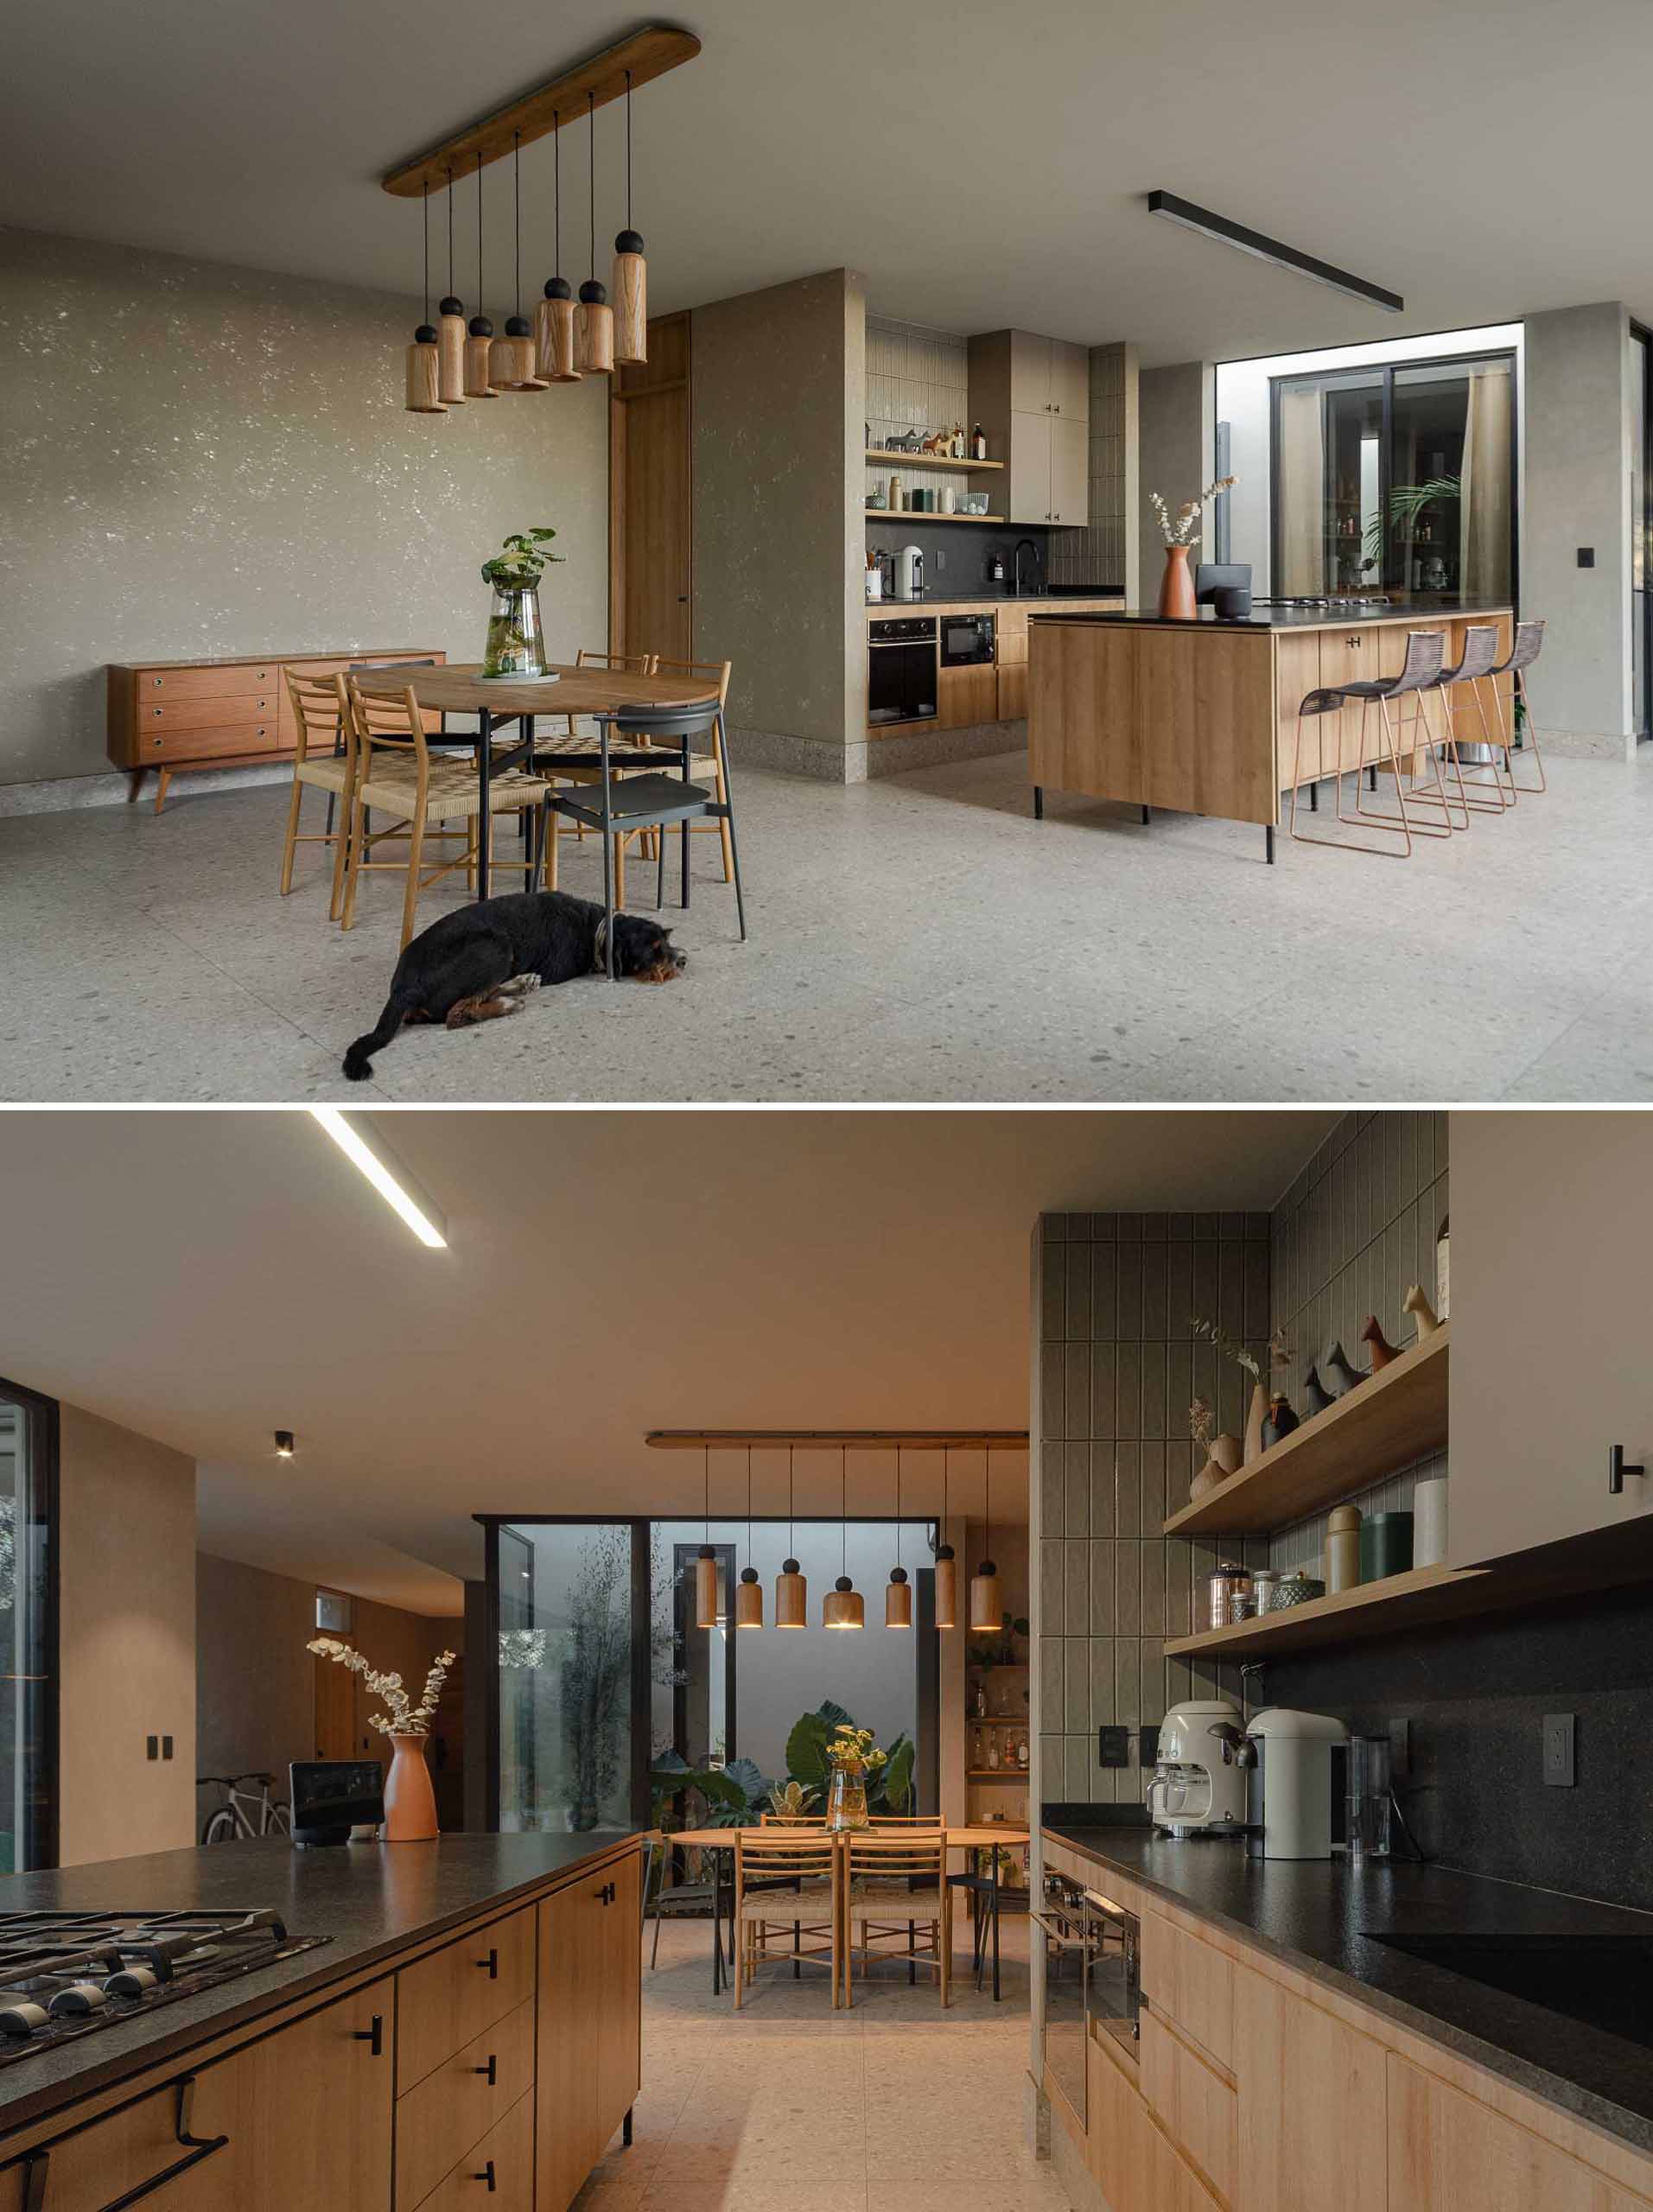 این آشپزخانه و فضای ناهار خوری مدرن و با طرح باز هر دو دارای چوب هستند، در حالی که آشپزخانه دارای پشتی مشکی است که مکمل قاب پنجره و در است.